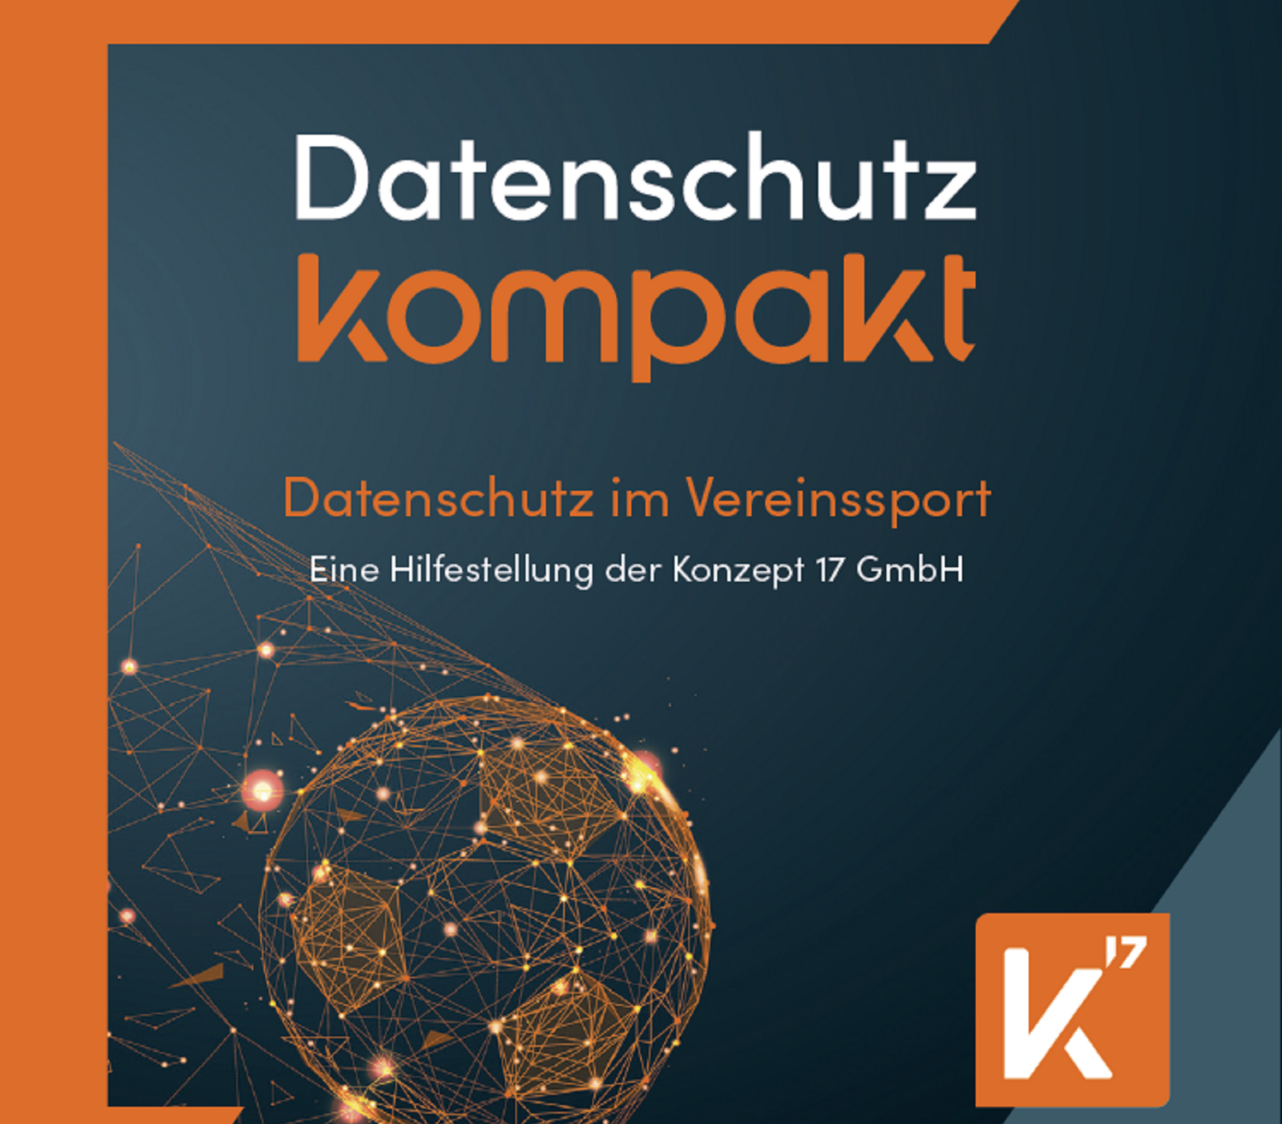 Datenschutz im Vereinssport als kompaktes Heft von der Konzept17 GmbH